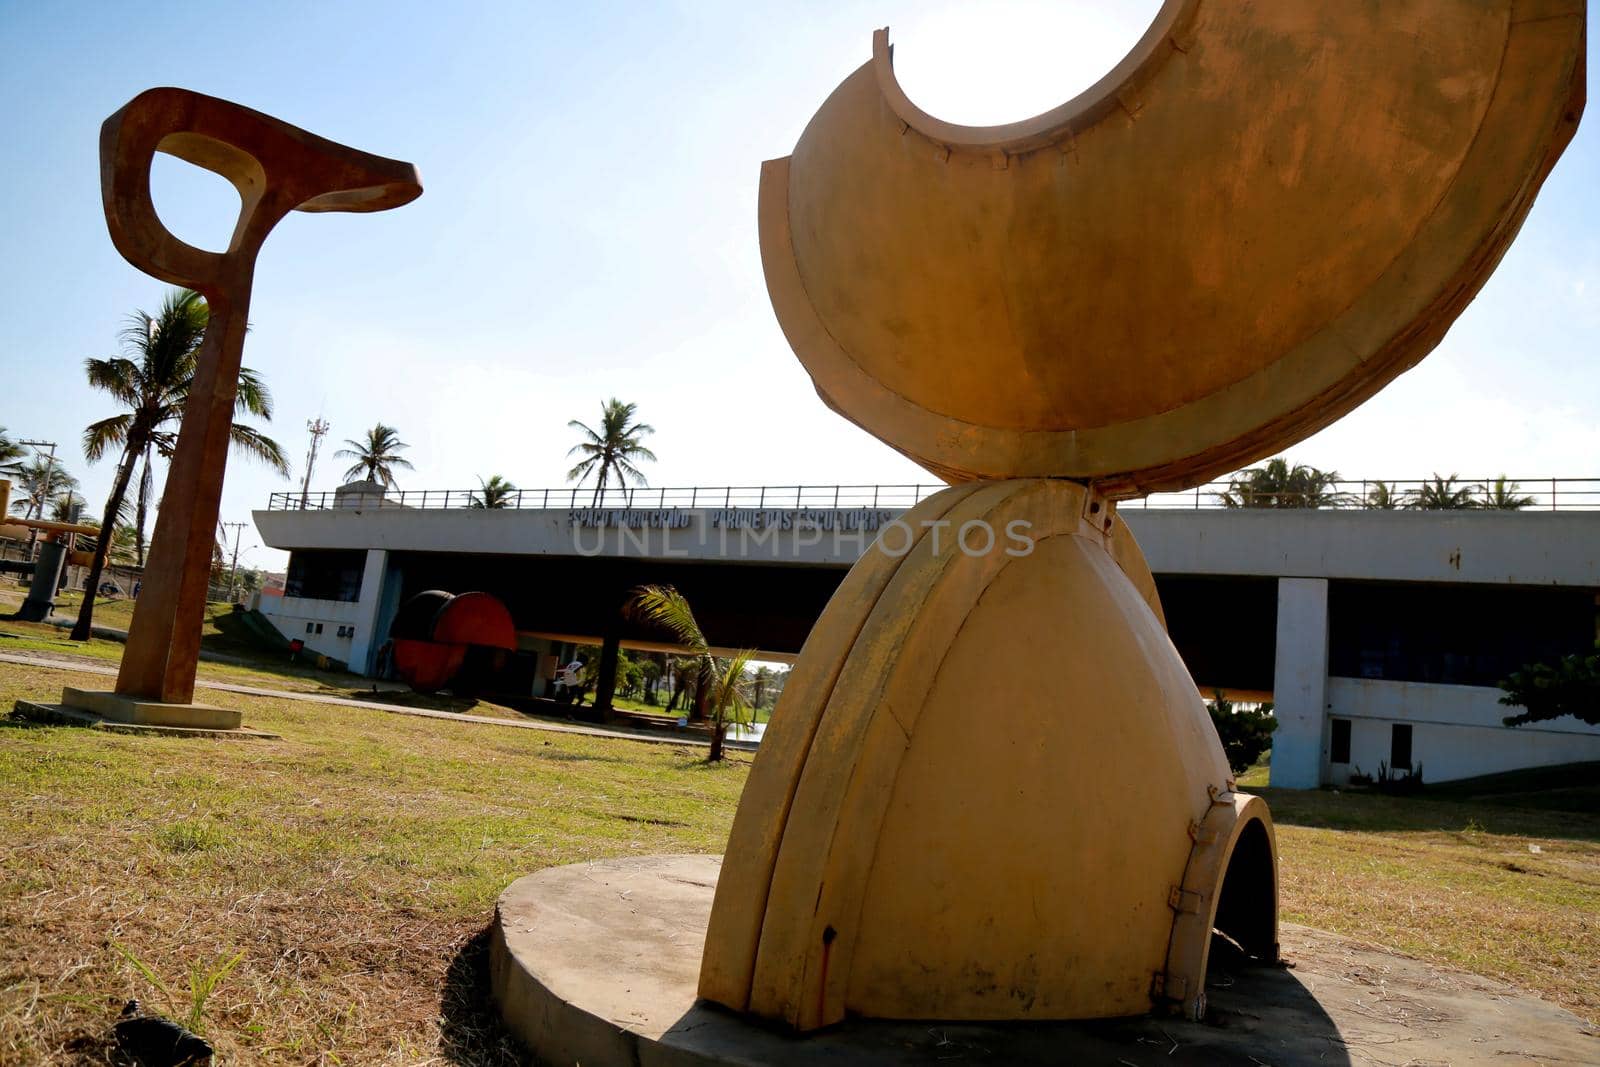 salvador, bahia / brazil - may 23, 2015: Parque das Esculturas e Espaço Mario Cravo no Parque Metropolitano de Pituacu em Salvador.